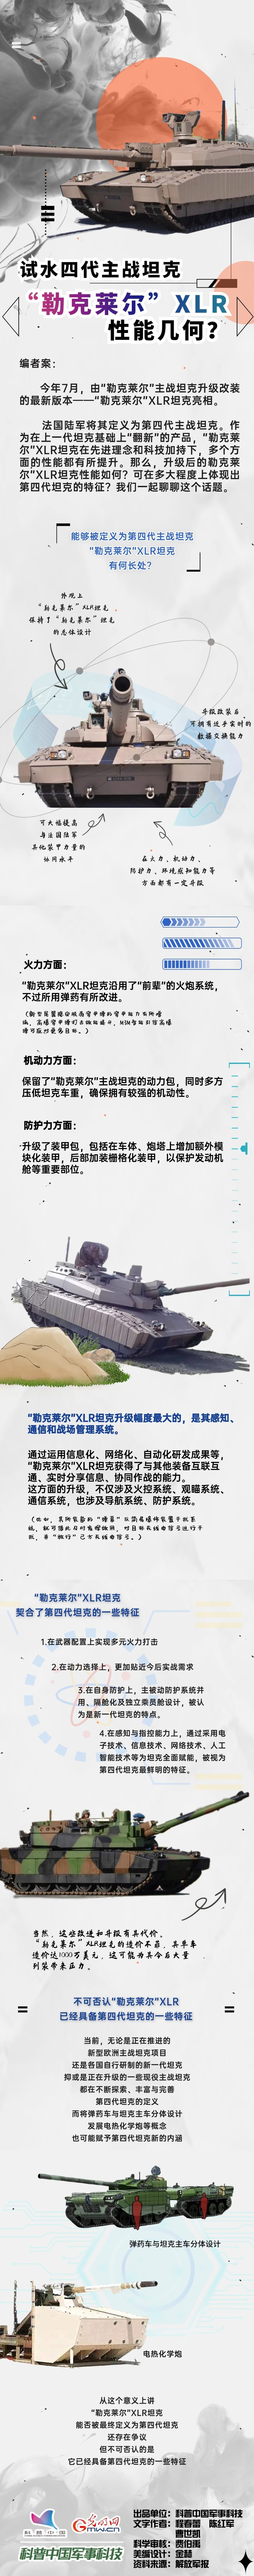 【科普中国军事科技】试水四代主战坦克“勒克莱尔”XLR性能几何？